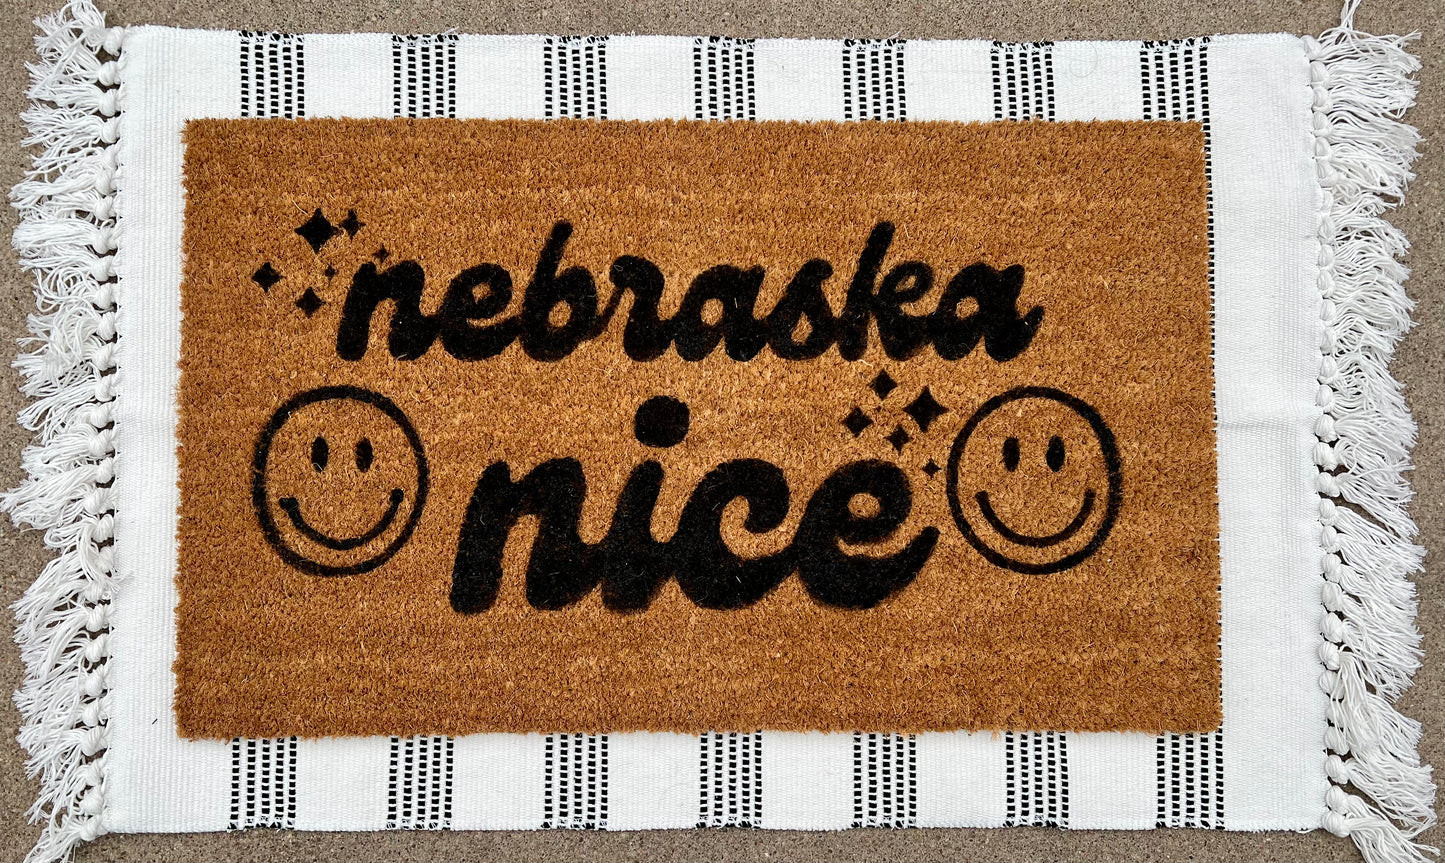 Nebraska Nice